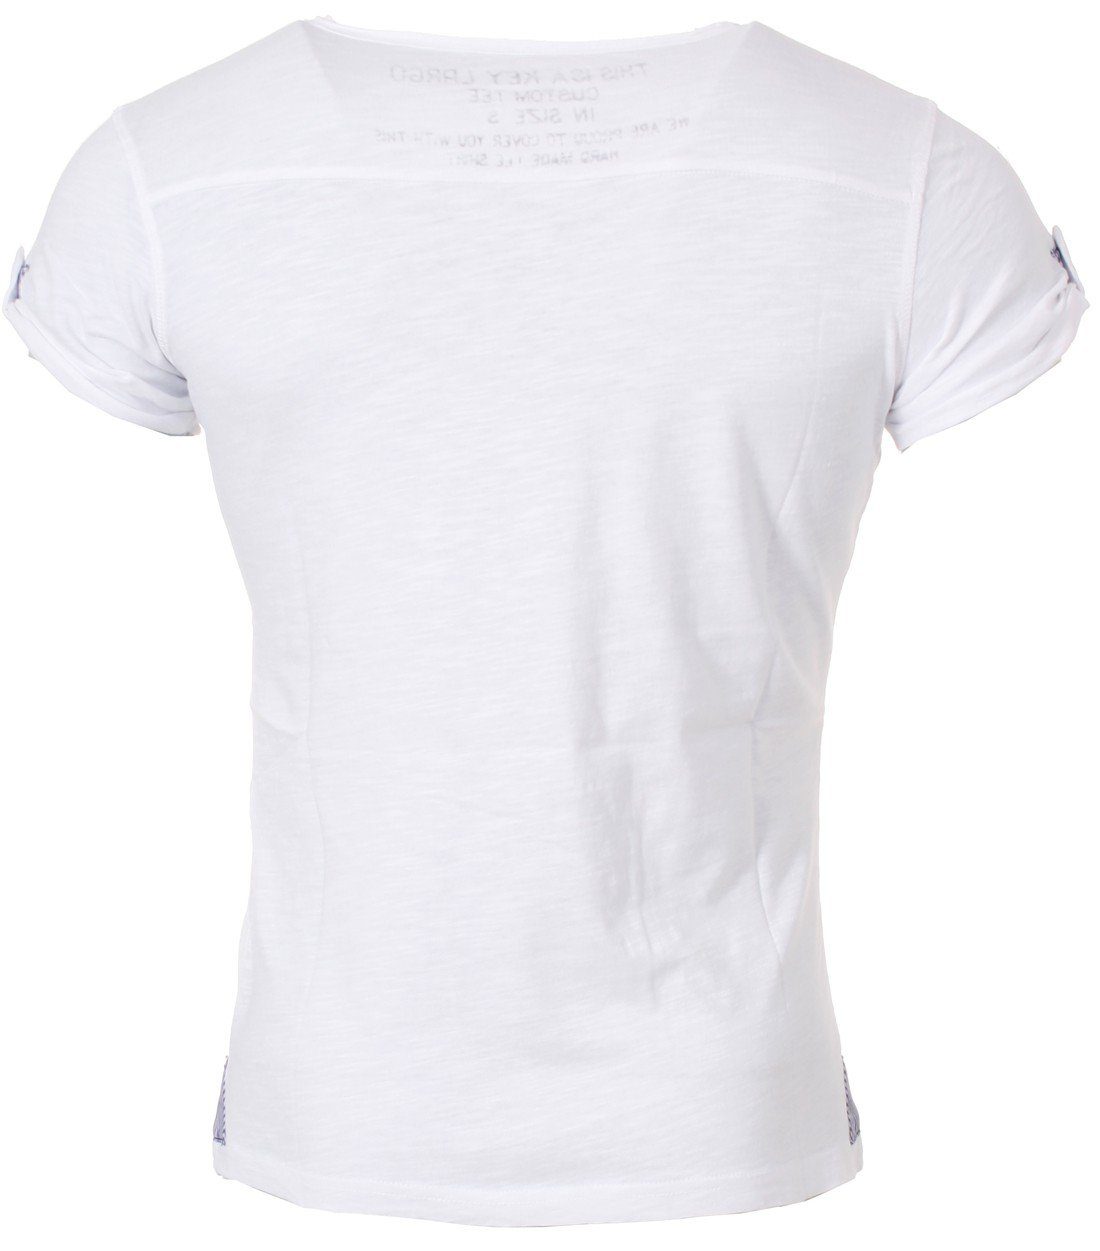 kurzarm Herren T-Shirt vintage MT00023 für Key unifarben button Largo fit Look slim Weiß Knopfleiste mit Arena